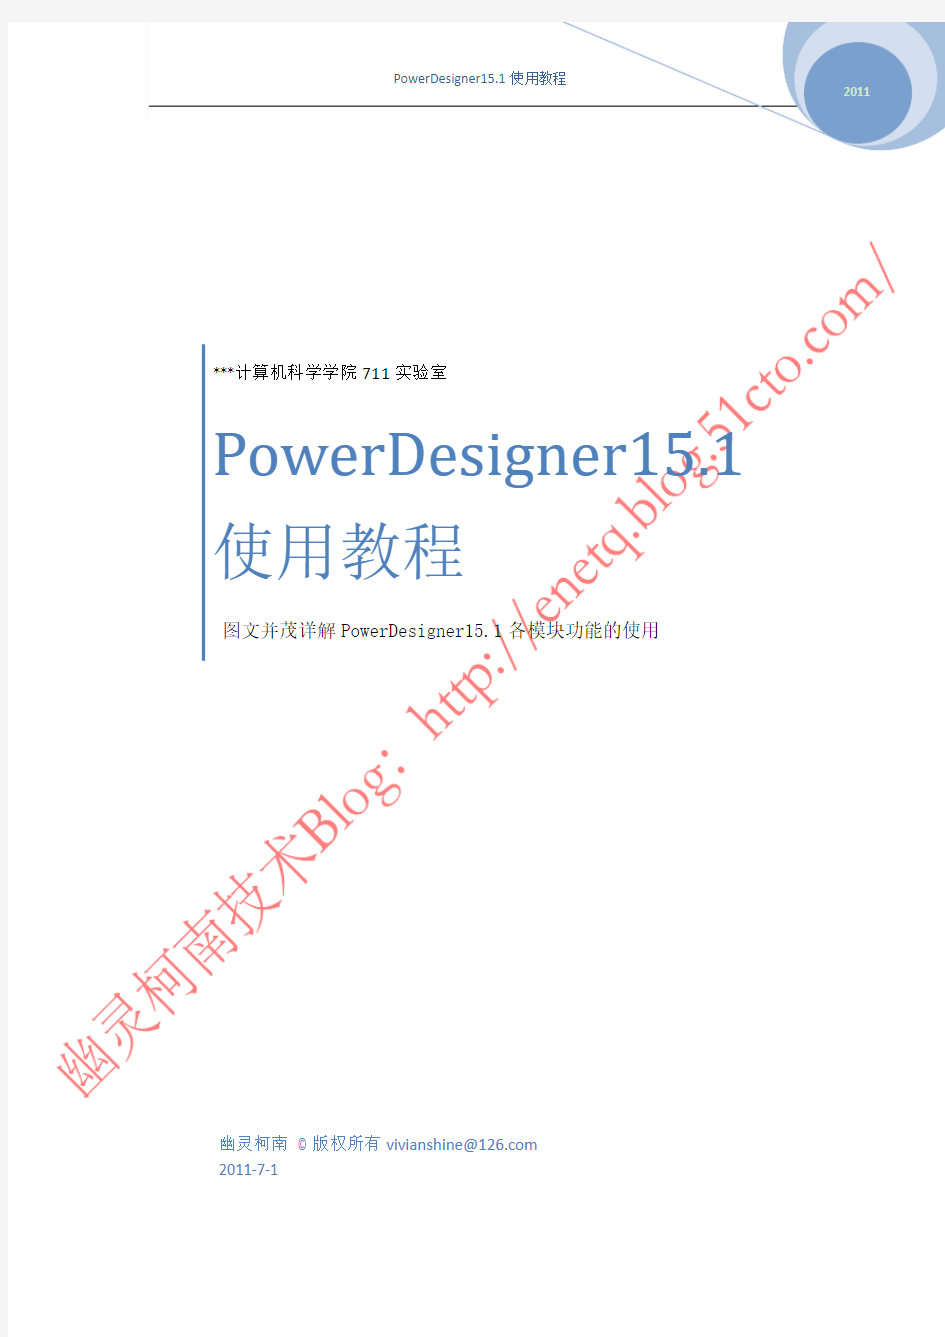 图文并茂详解PowerDesigner15.1各模块功能的使用